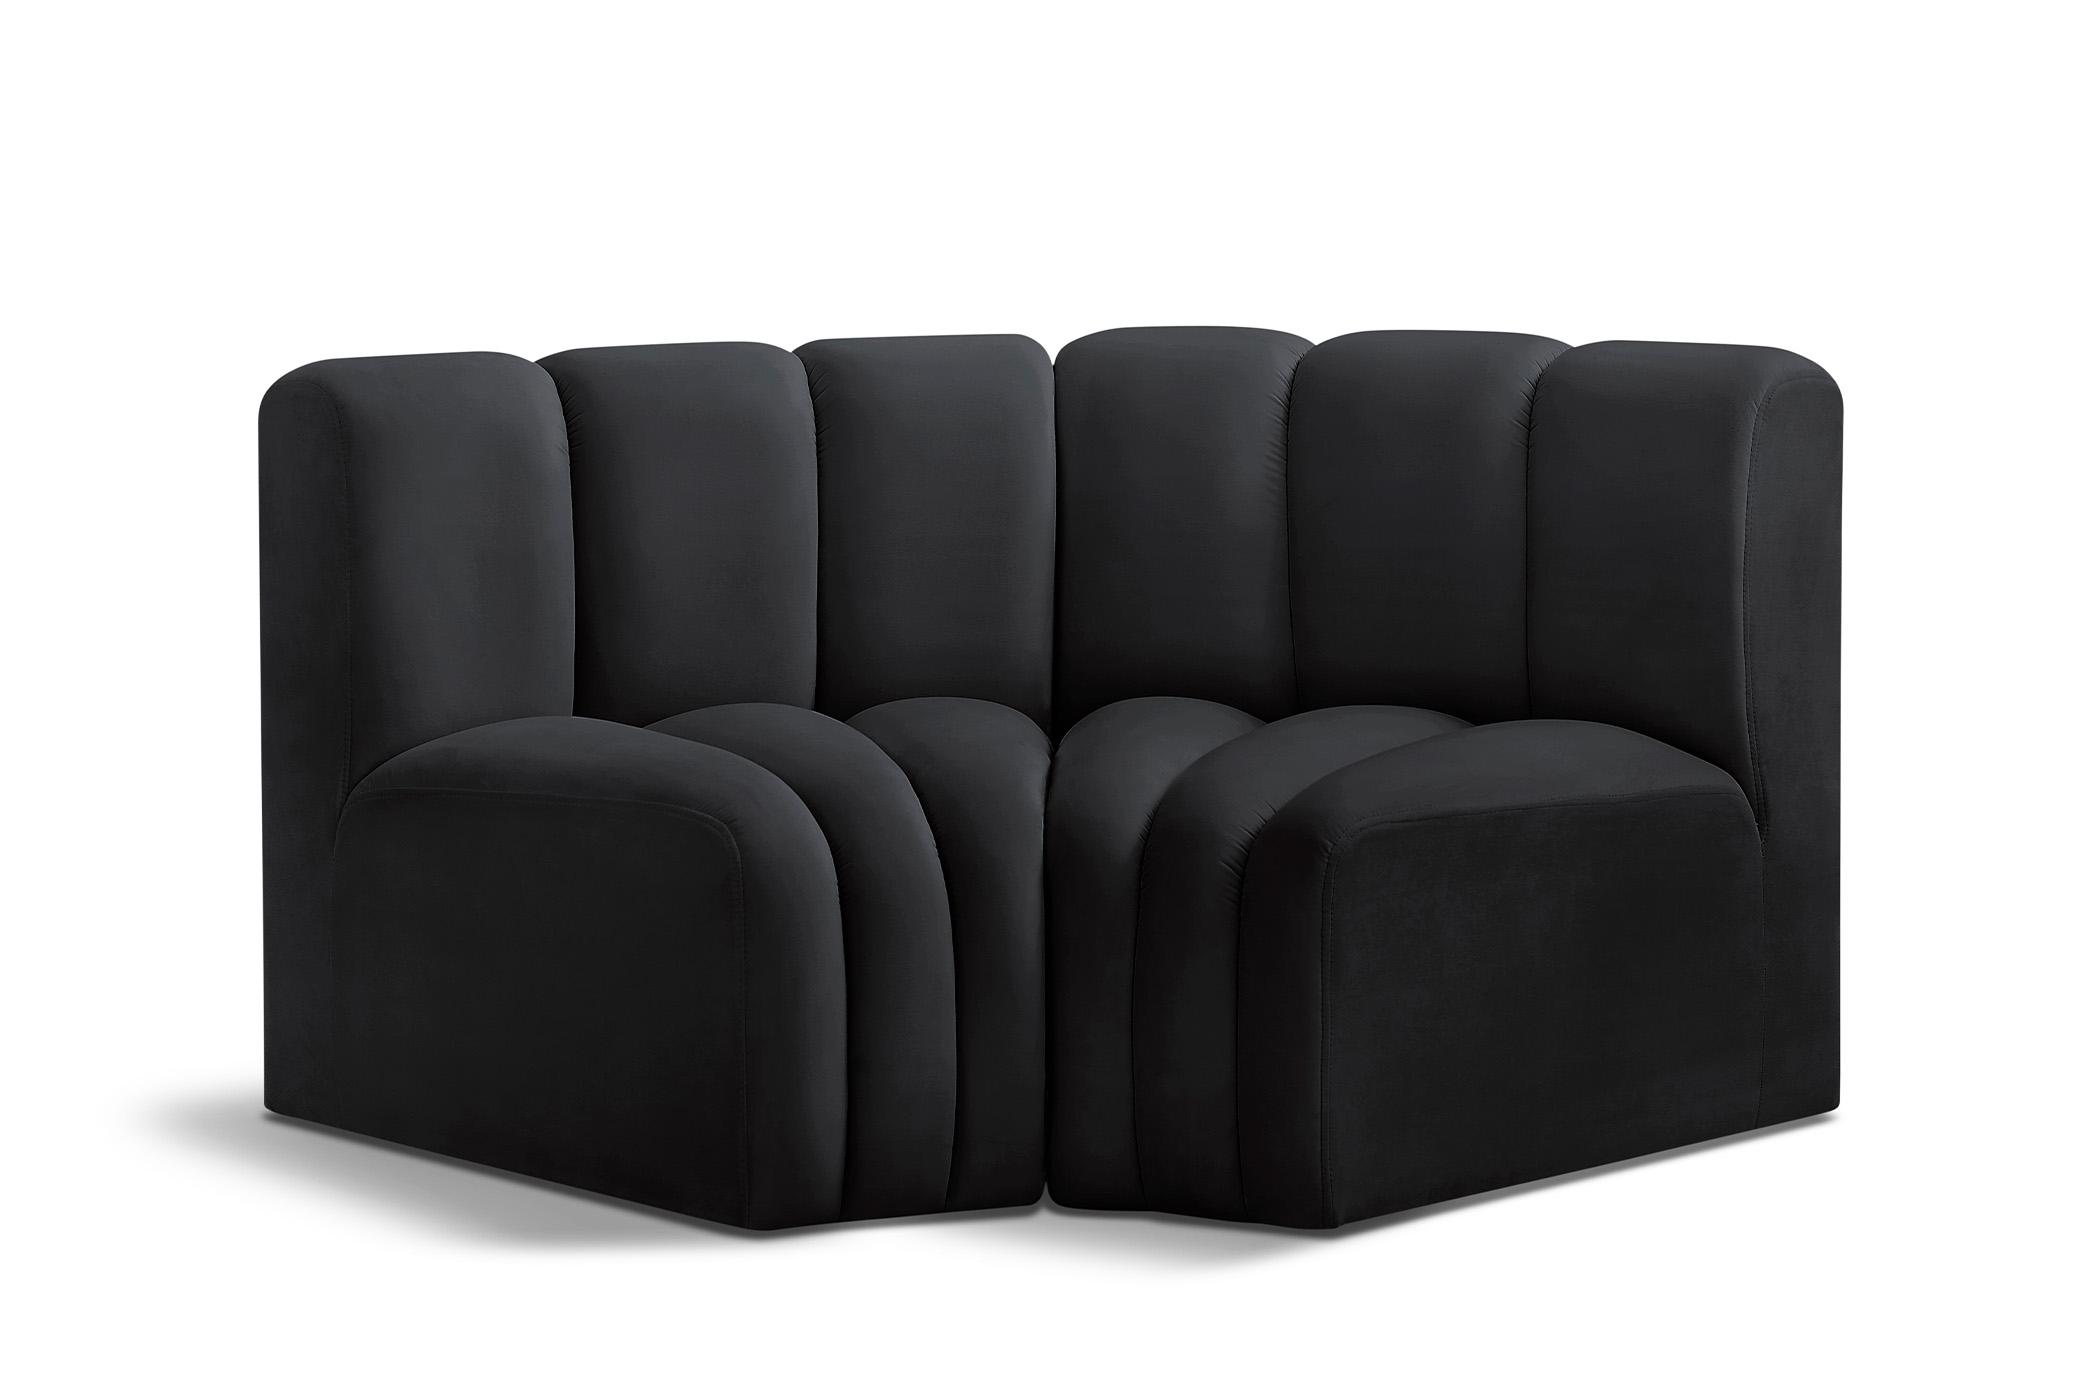 Contemporary, Modern Modular Sectional Sofa ARC 103Black-S2B 103Black-S2B in Black Velvet